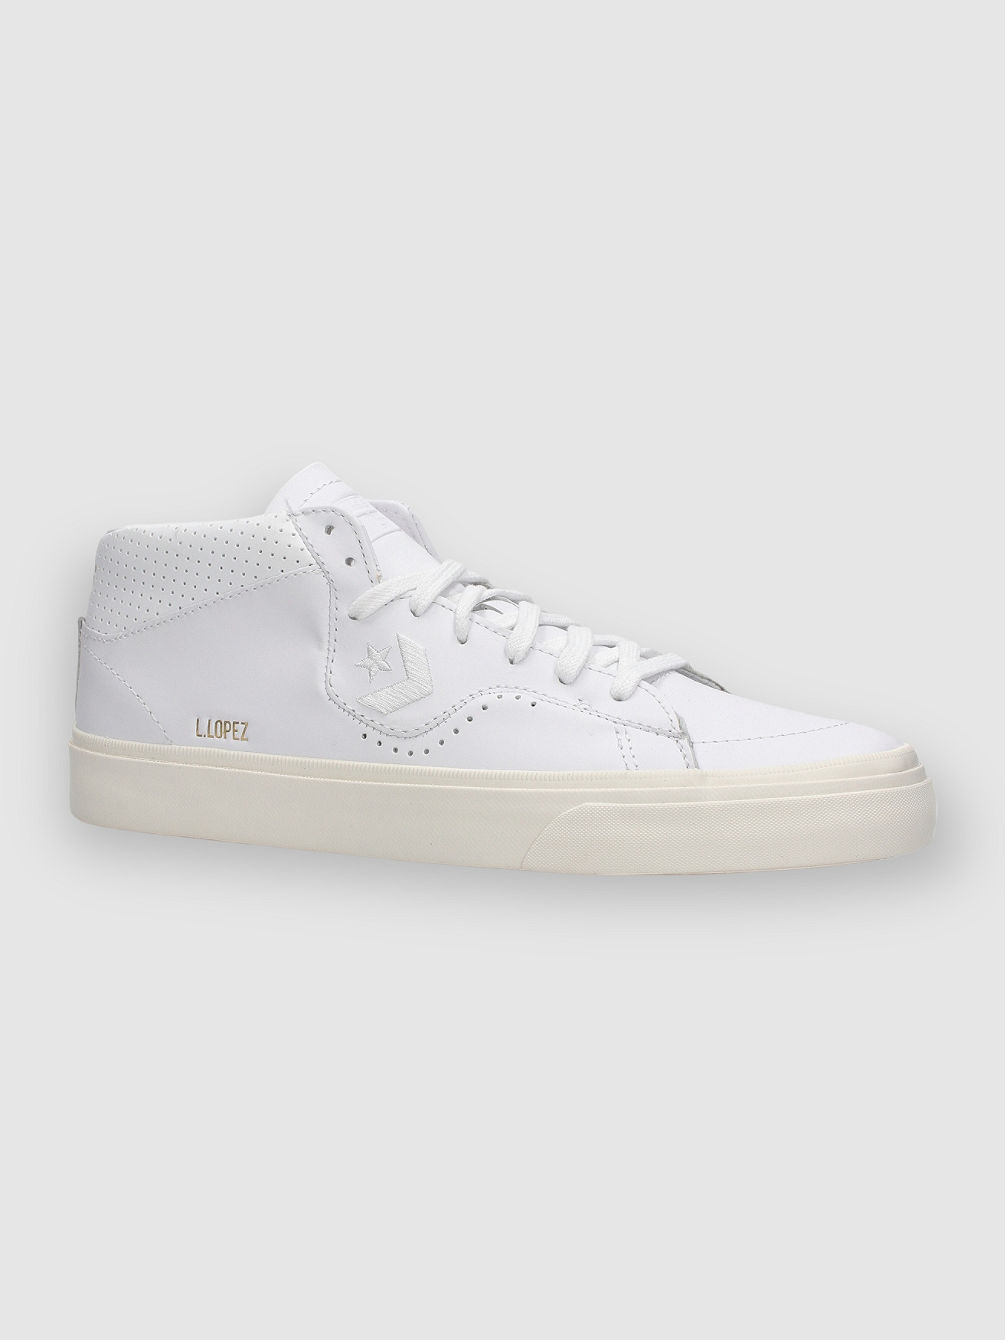 Cons Louie Lopez Pro Mono Leather Skate Shoe